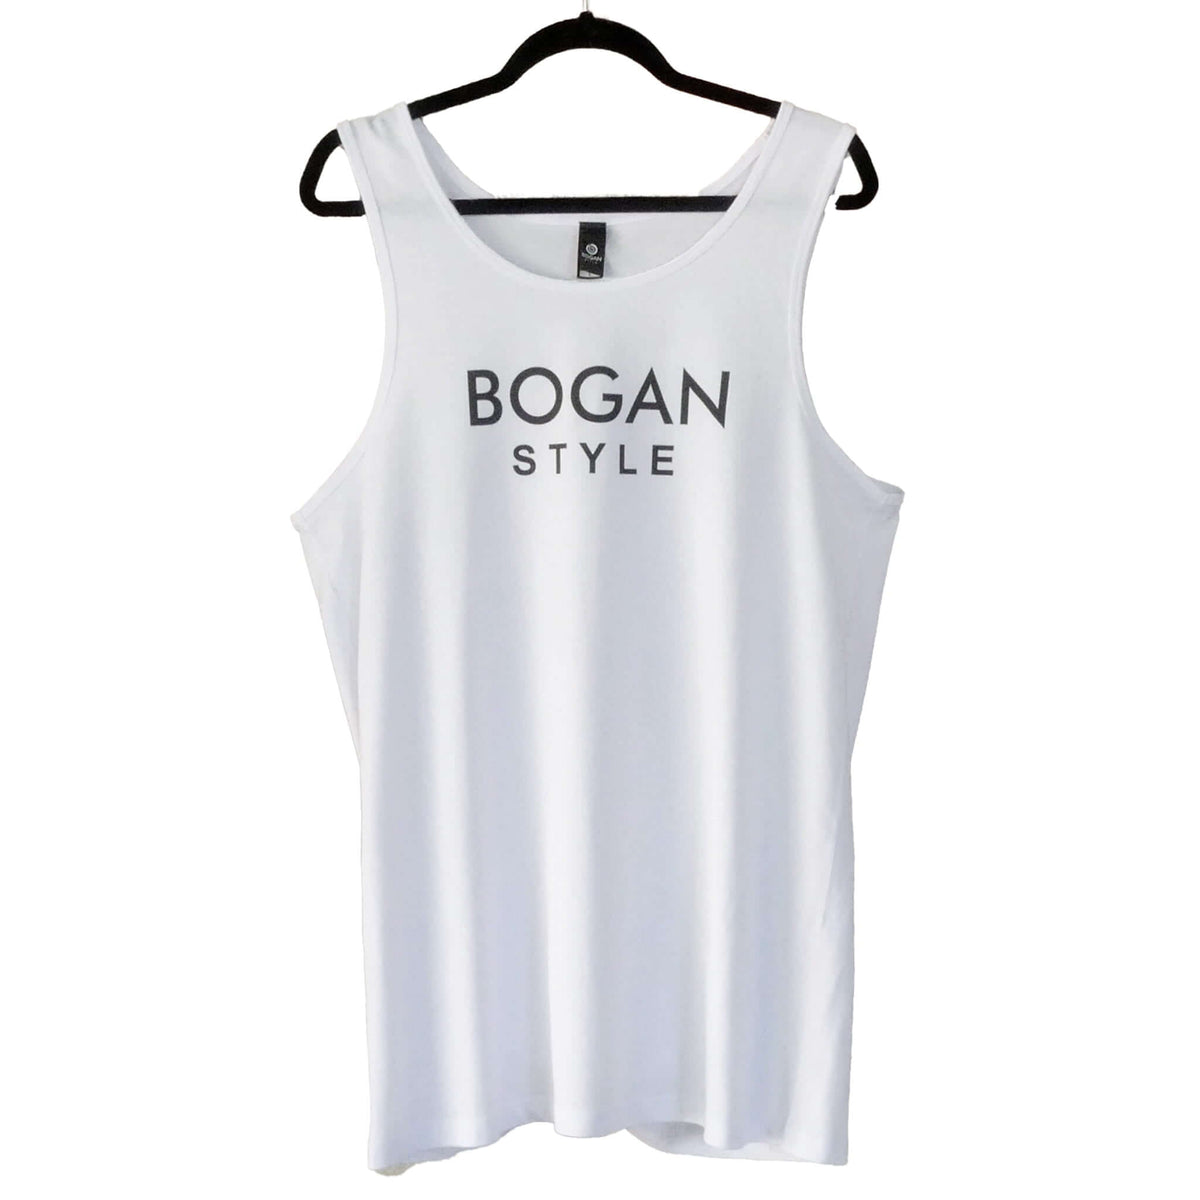 Men's white Bogan Style singlet on coat hanger